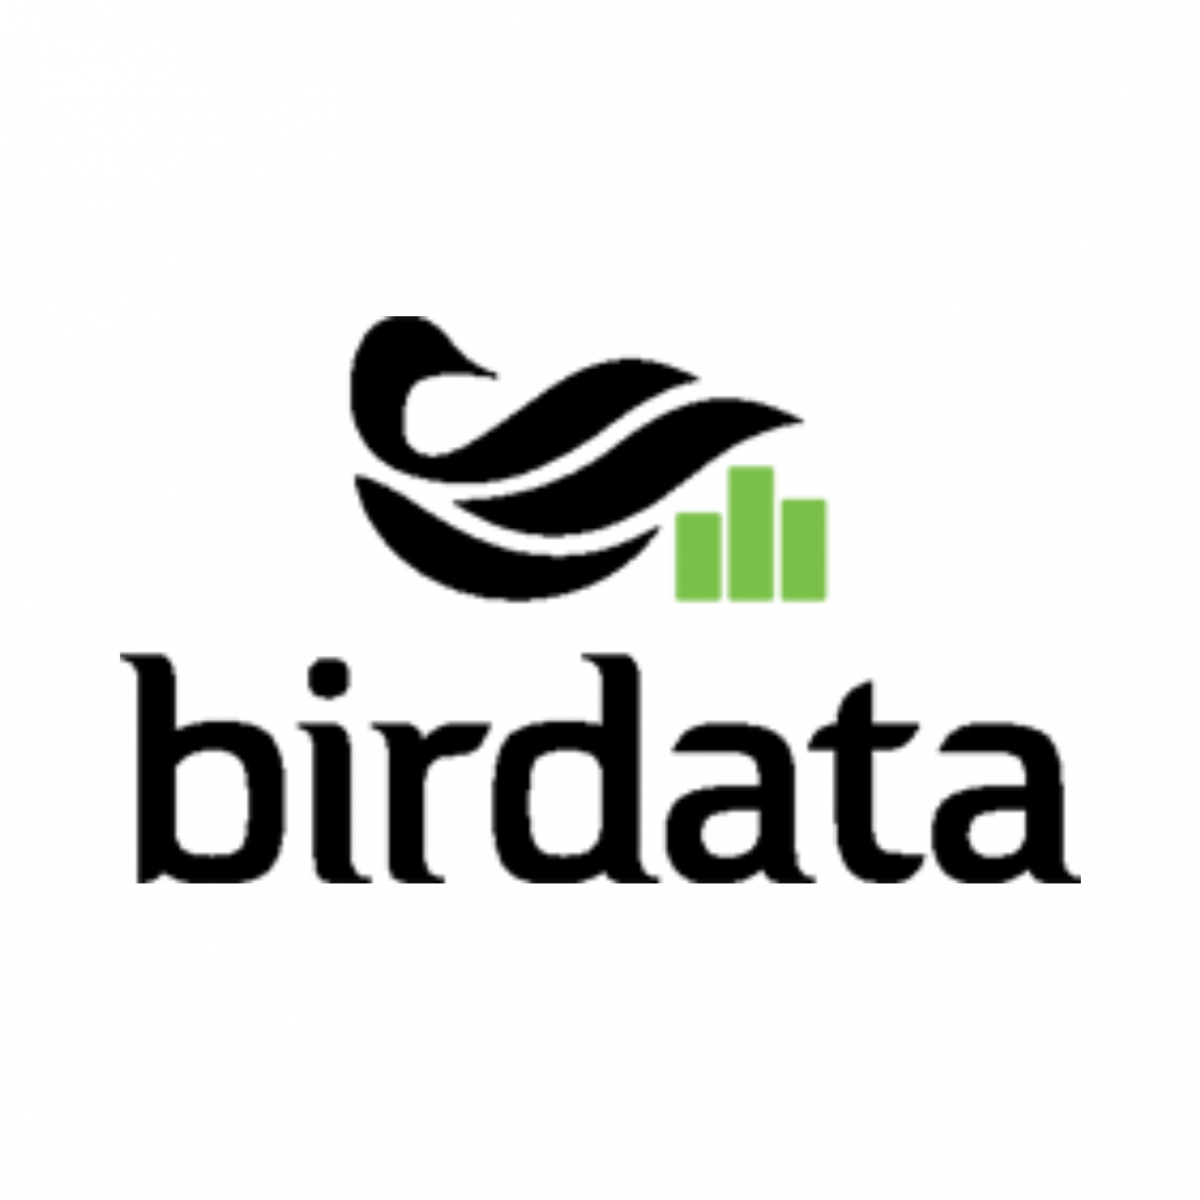 birdata app, citizen science